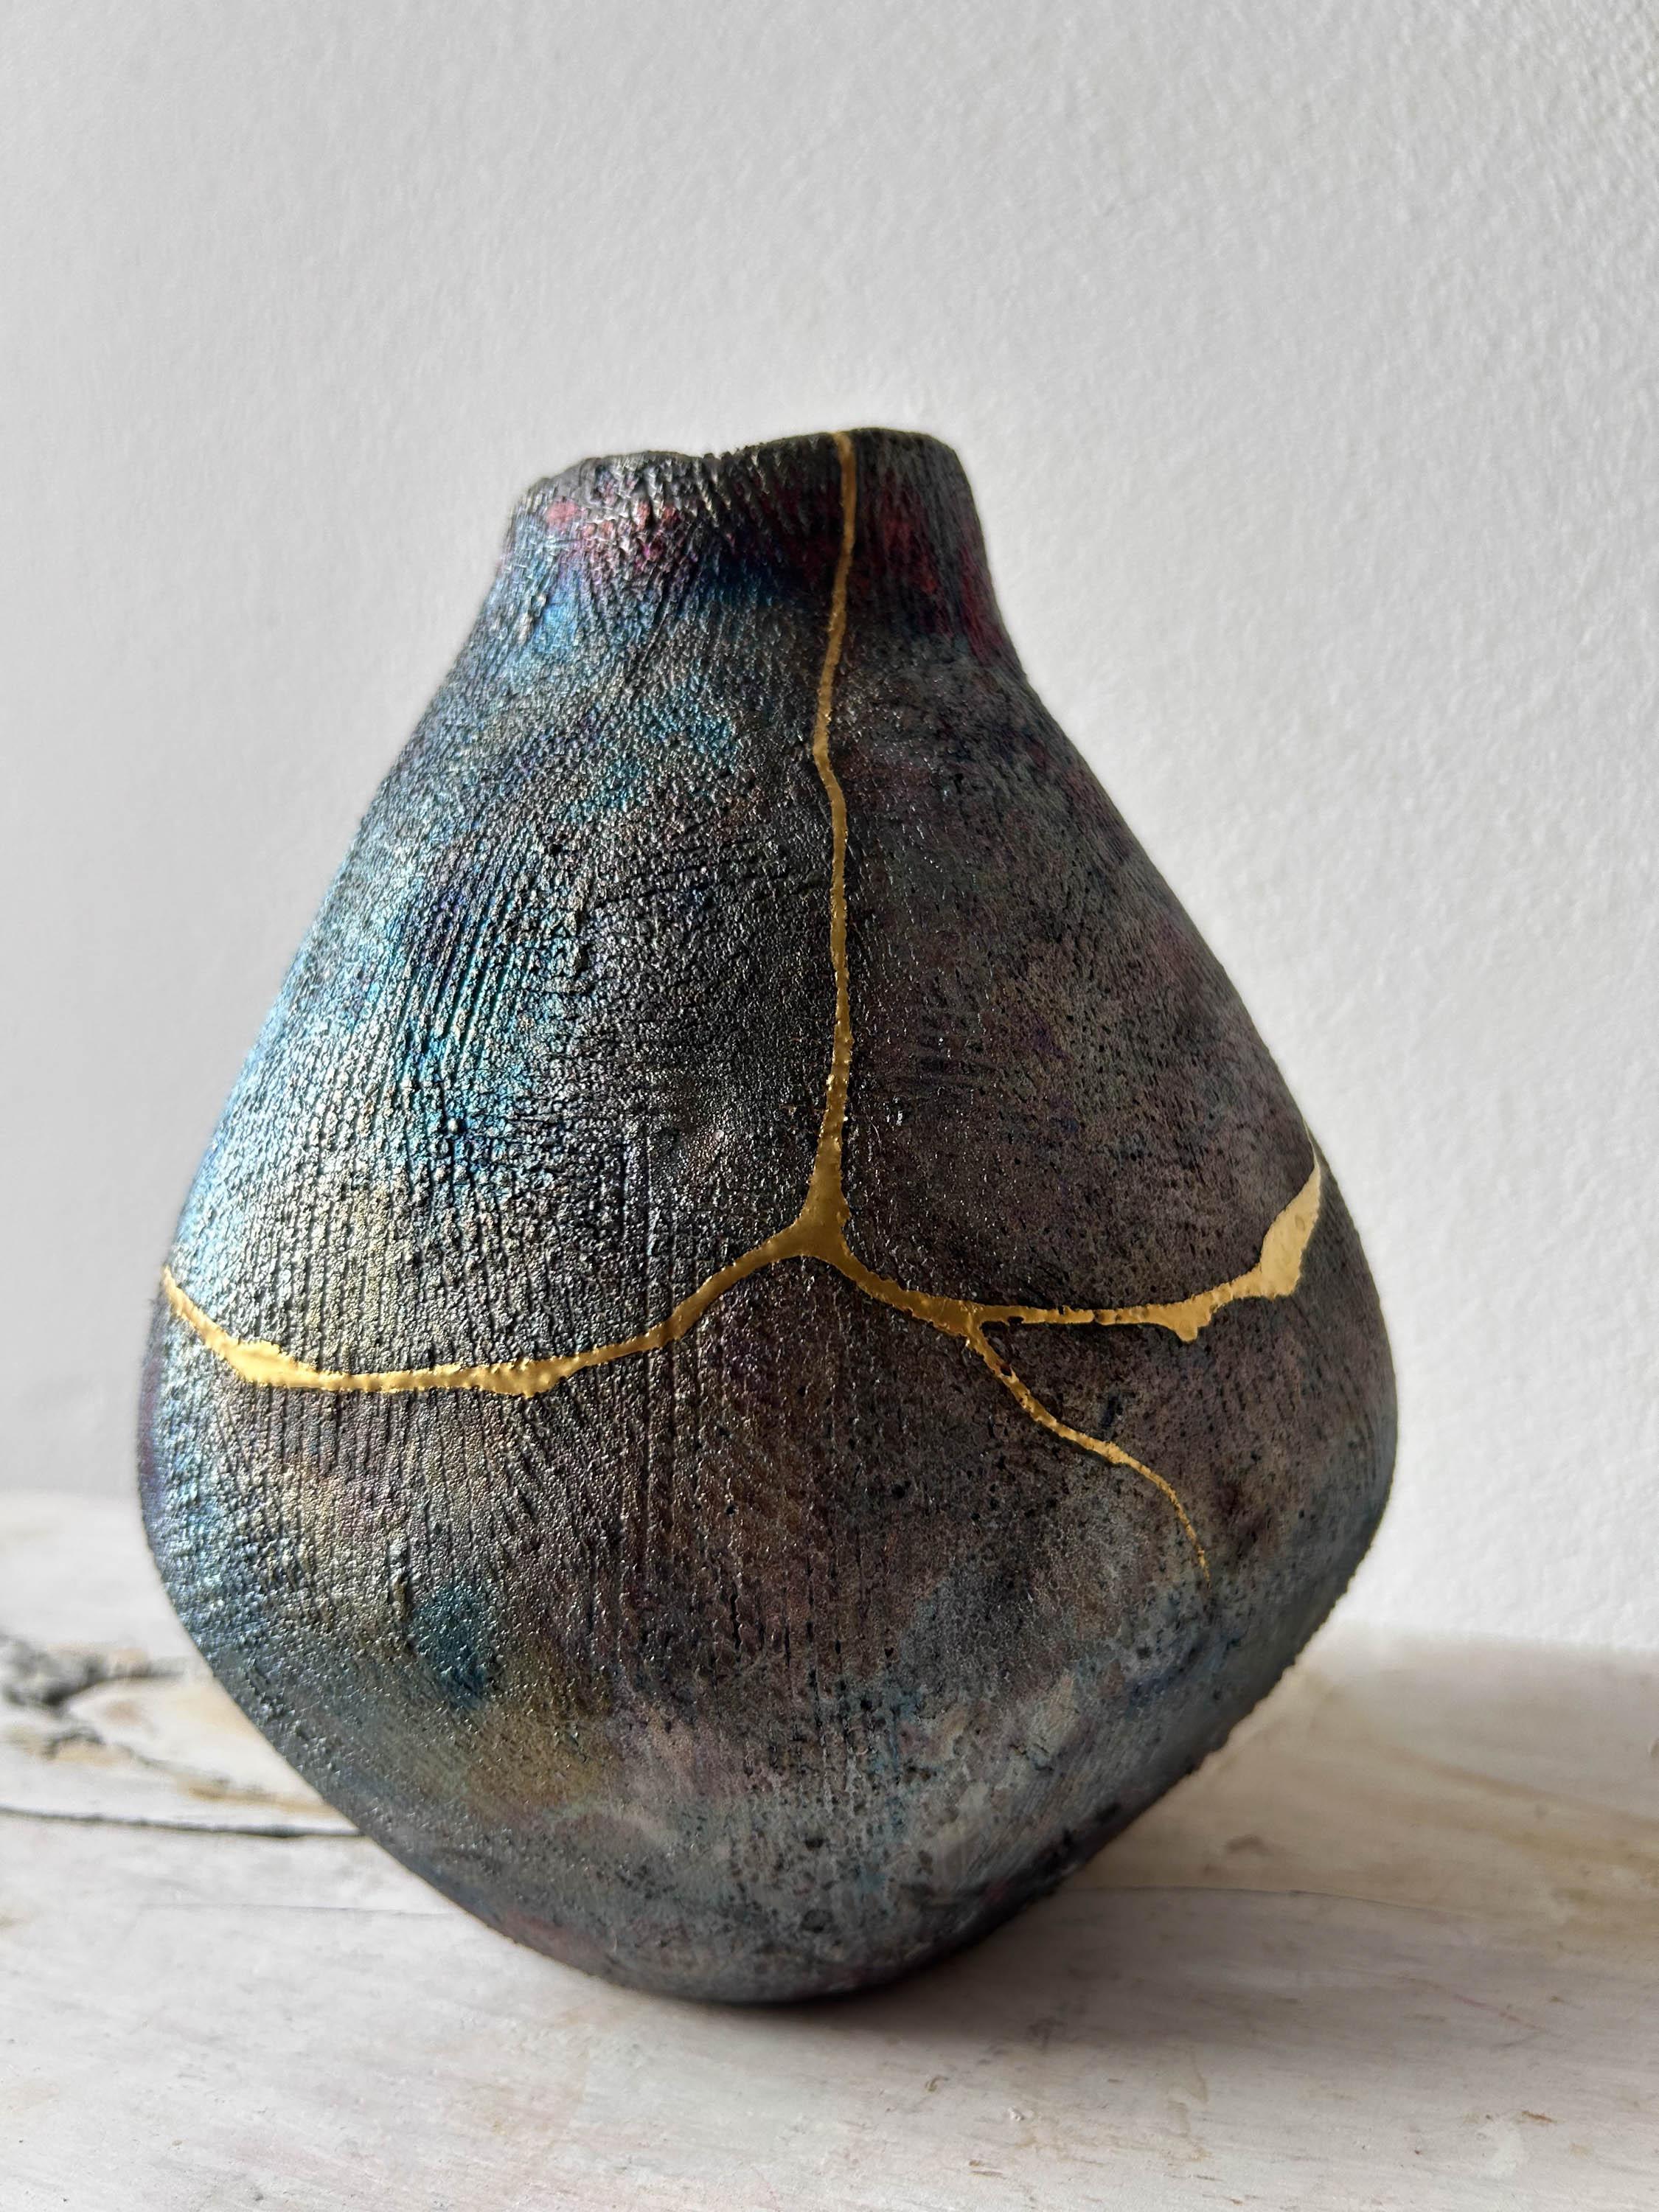 Ceramic Coil-built Iridescent Vase with 24 Karat Gold Kintsugi Repair